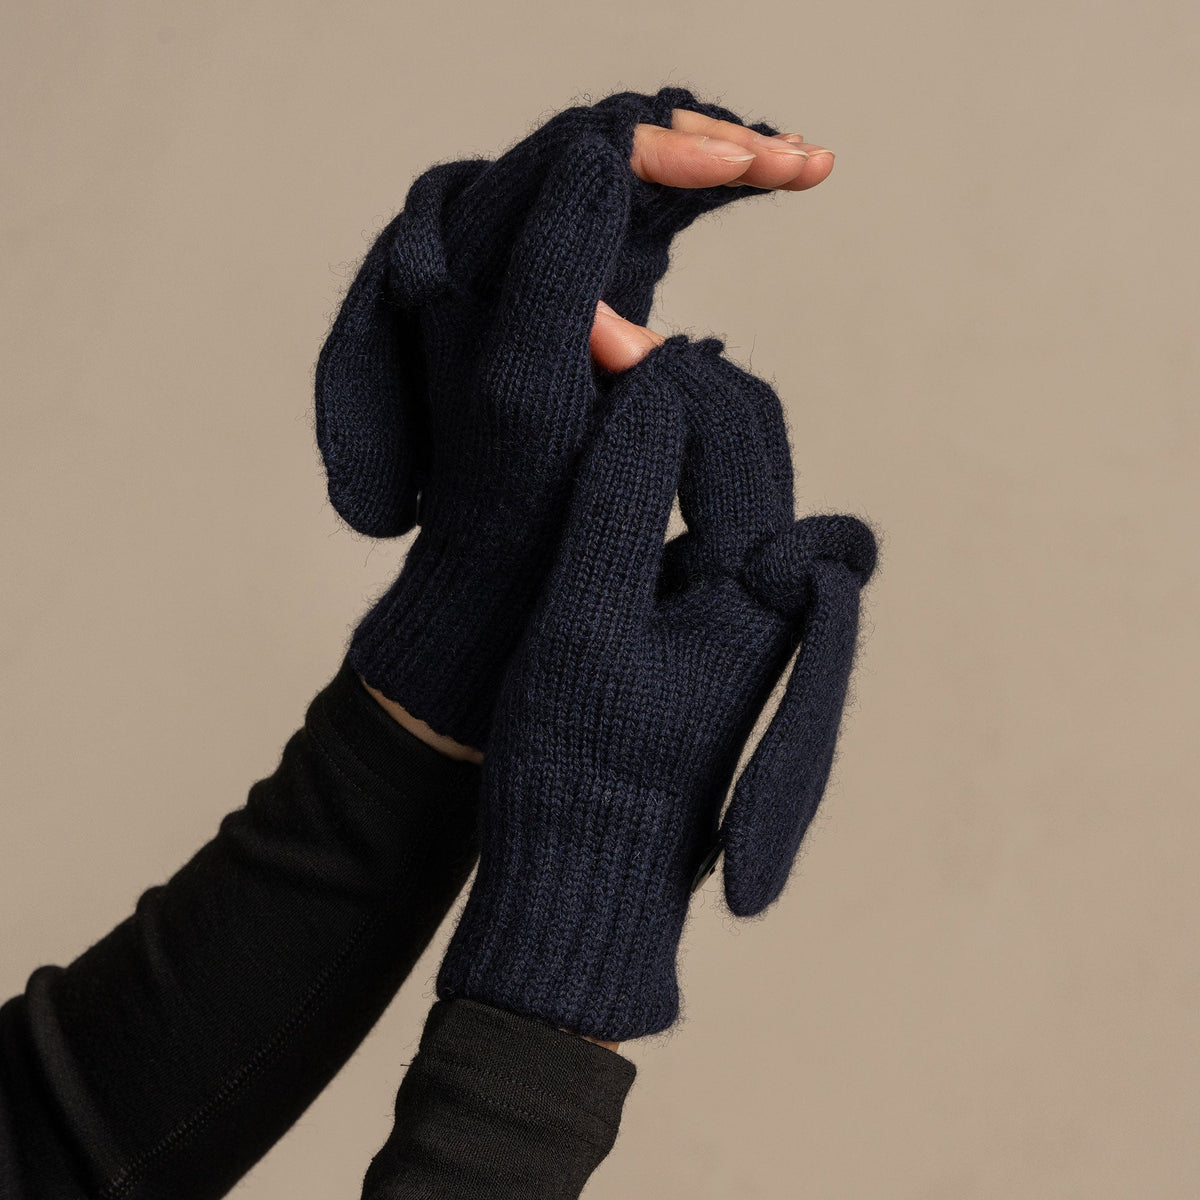 MENIQUE 100% Merino Wool Womens Knit Convertible Gloves Merino